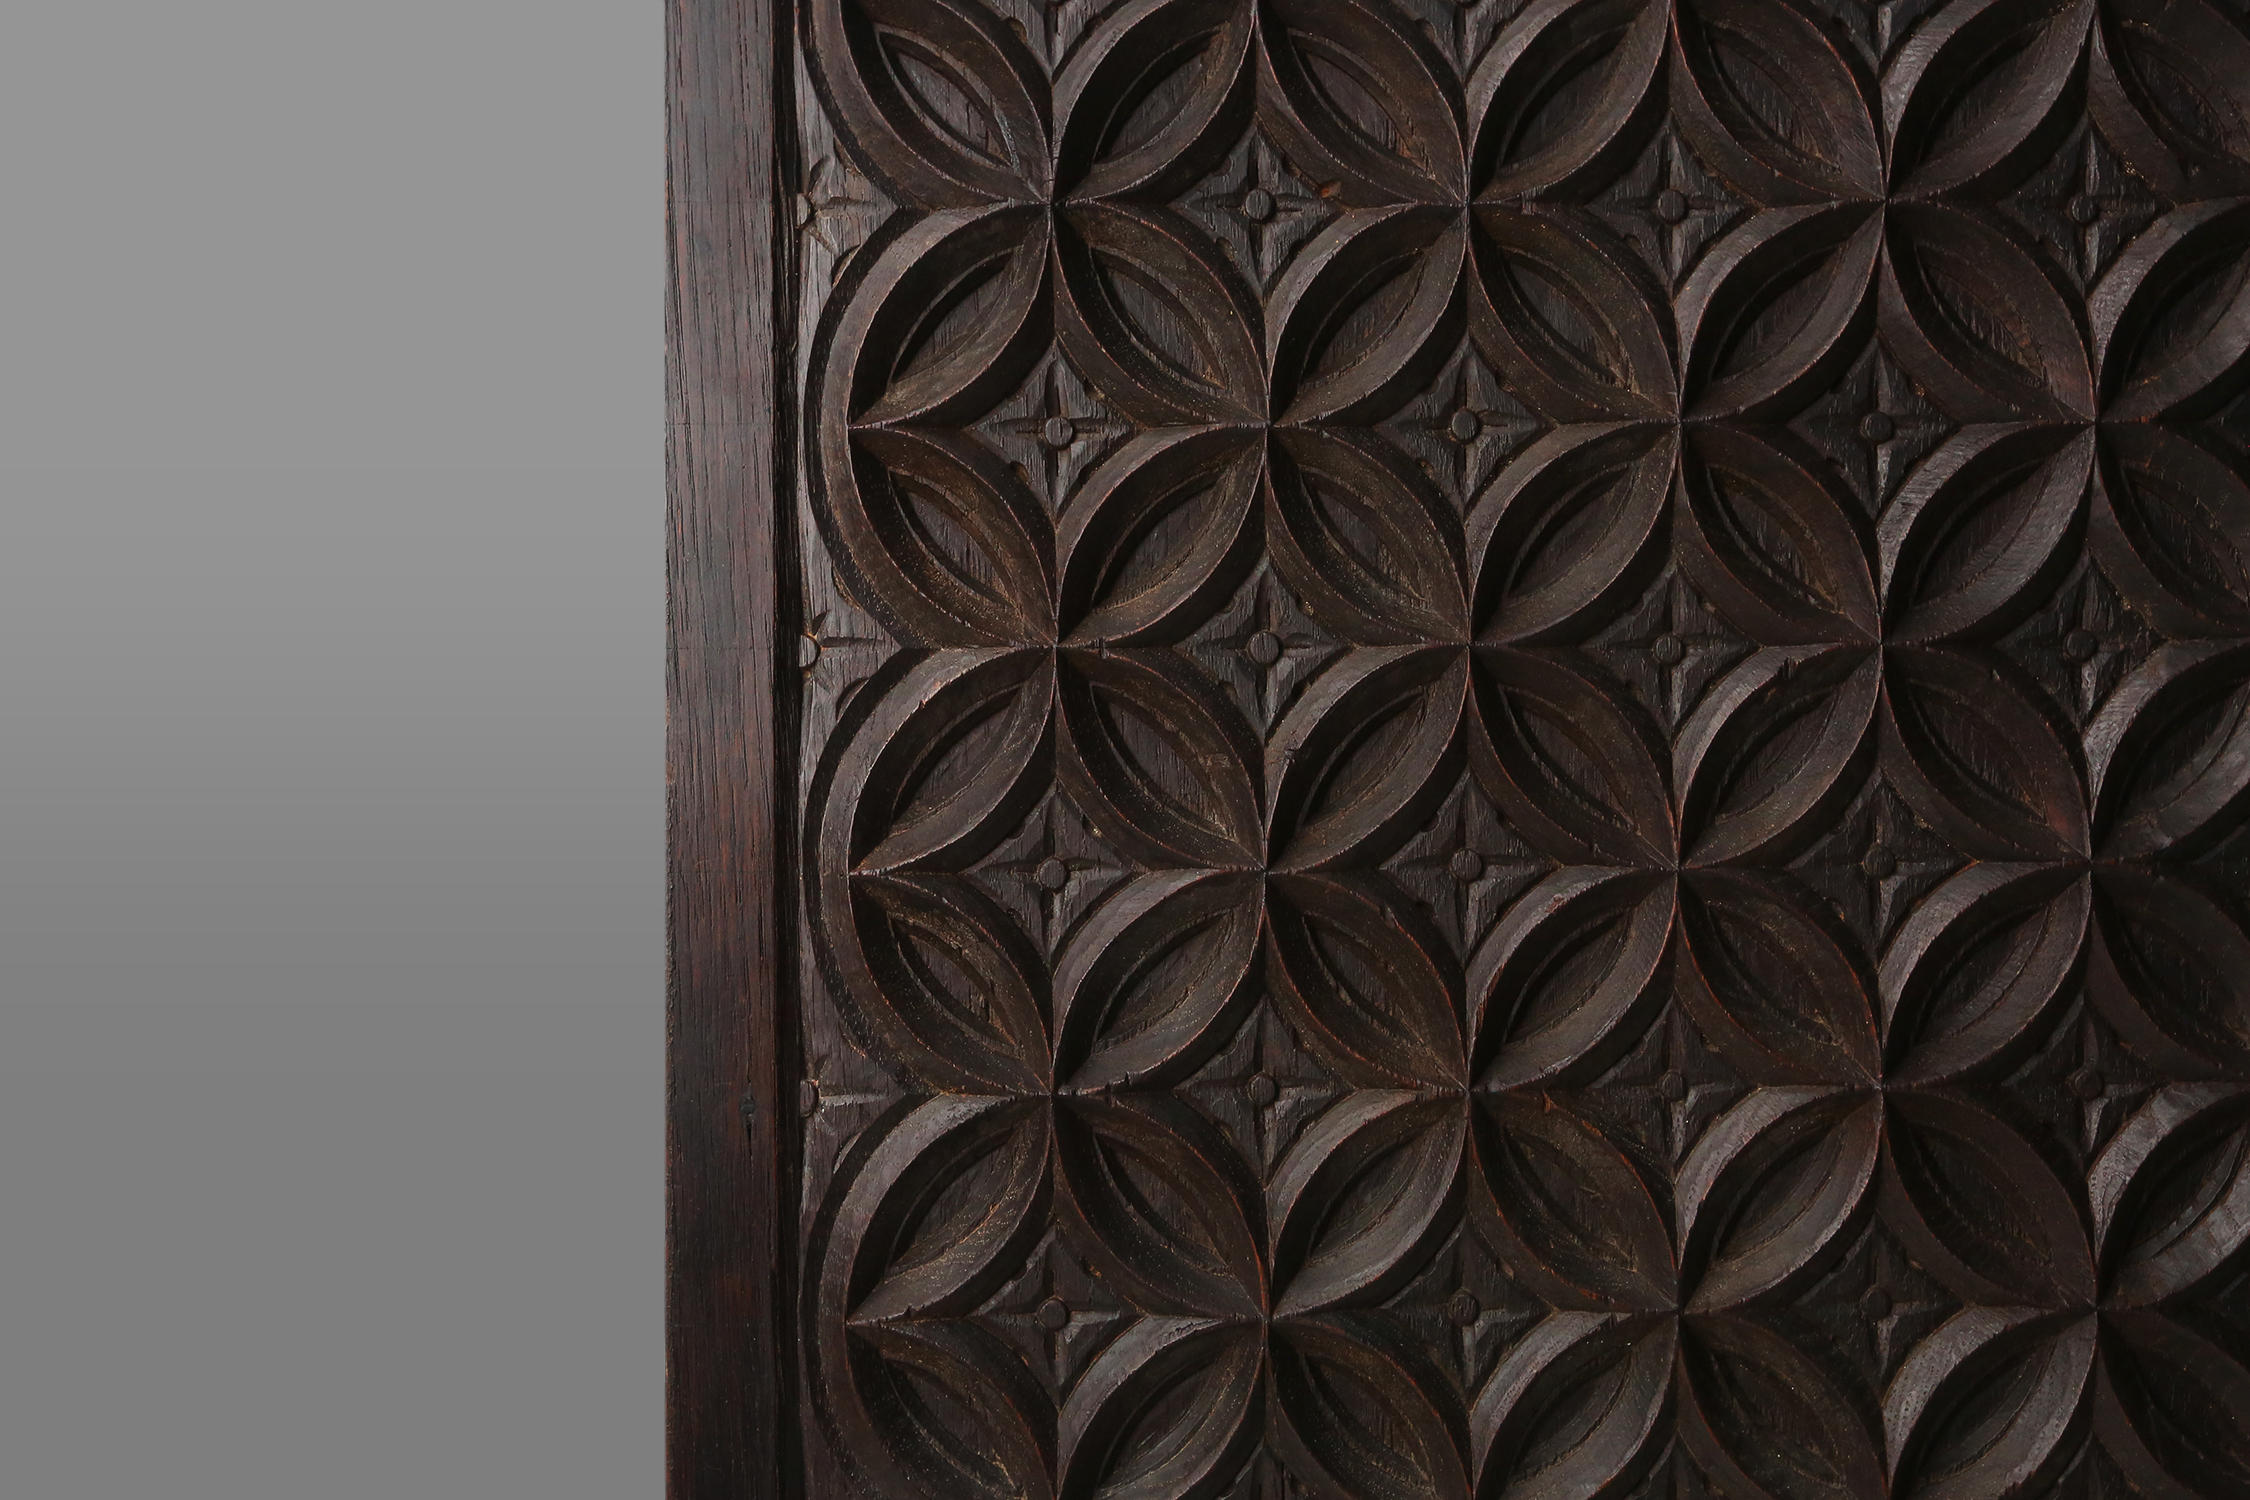 Gothic Wood Panel, France, 1600sthumbnail